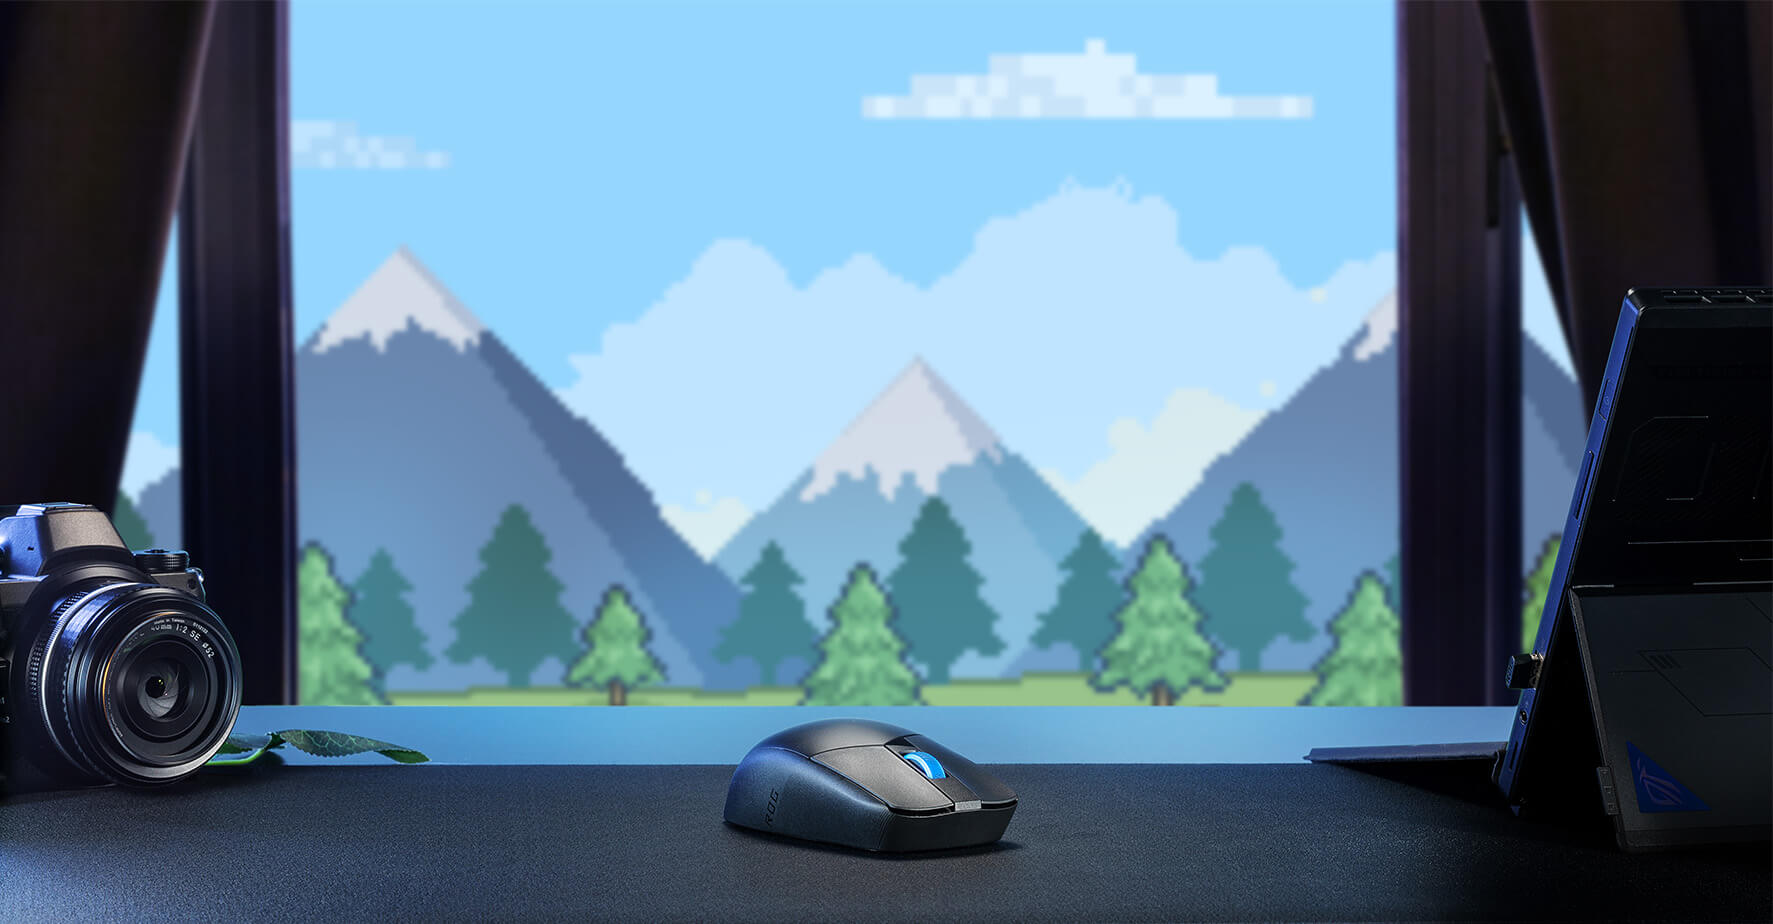 El ROG Strix Impact III Wireless sobre una mesa ante un fondo montañoso azul